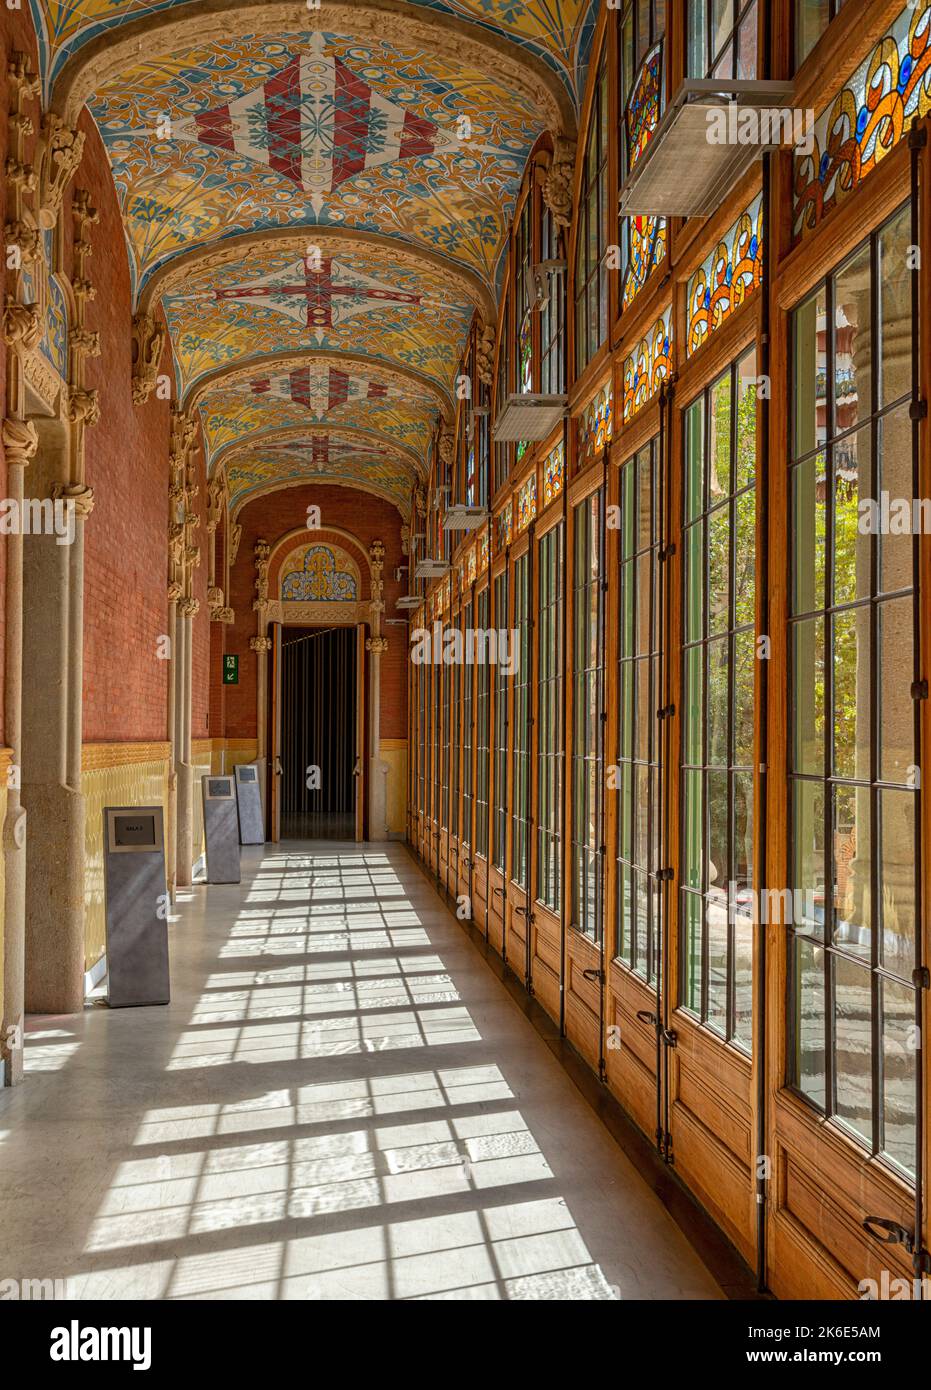 Vista interna della hall e dei corridoi dell'edificio principale dell'ospedale De la Santa Creu i Sant Pau dell'architetto Lluís Domènech i Montaner, Barcellona, CA Foto Stock